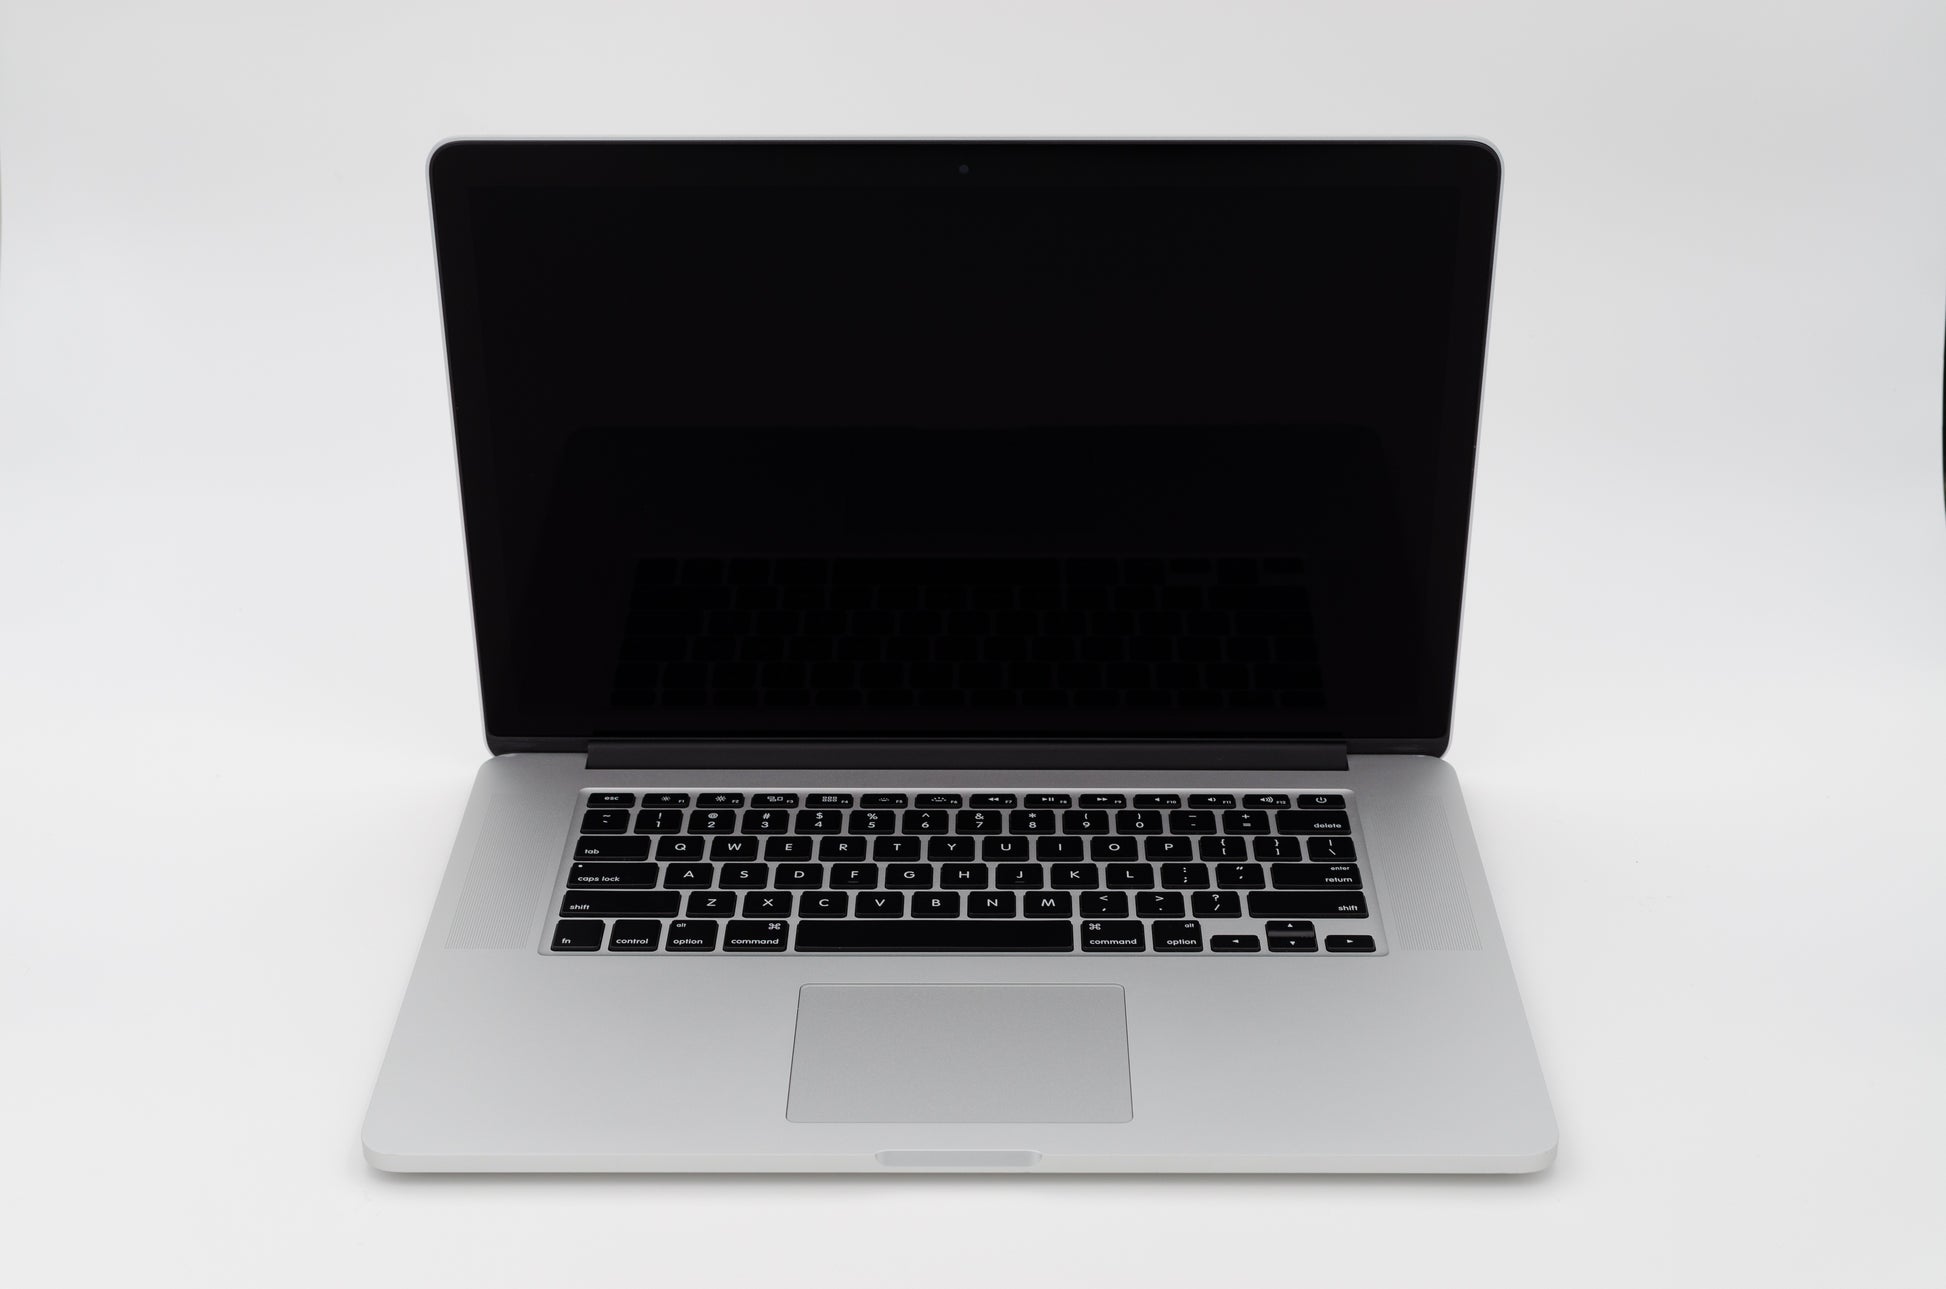 apple-mid-2012-15.4-inch-macbook-pro-a1286-aluminum-qci7 - 2.3ghz processor, 4gb ram, gt 650m - 1gb gpu-md103ll/a-2